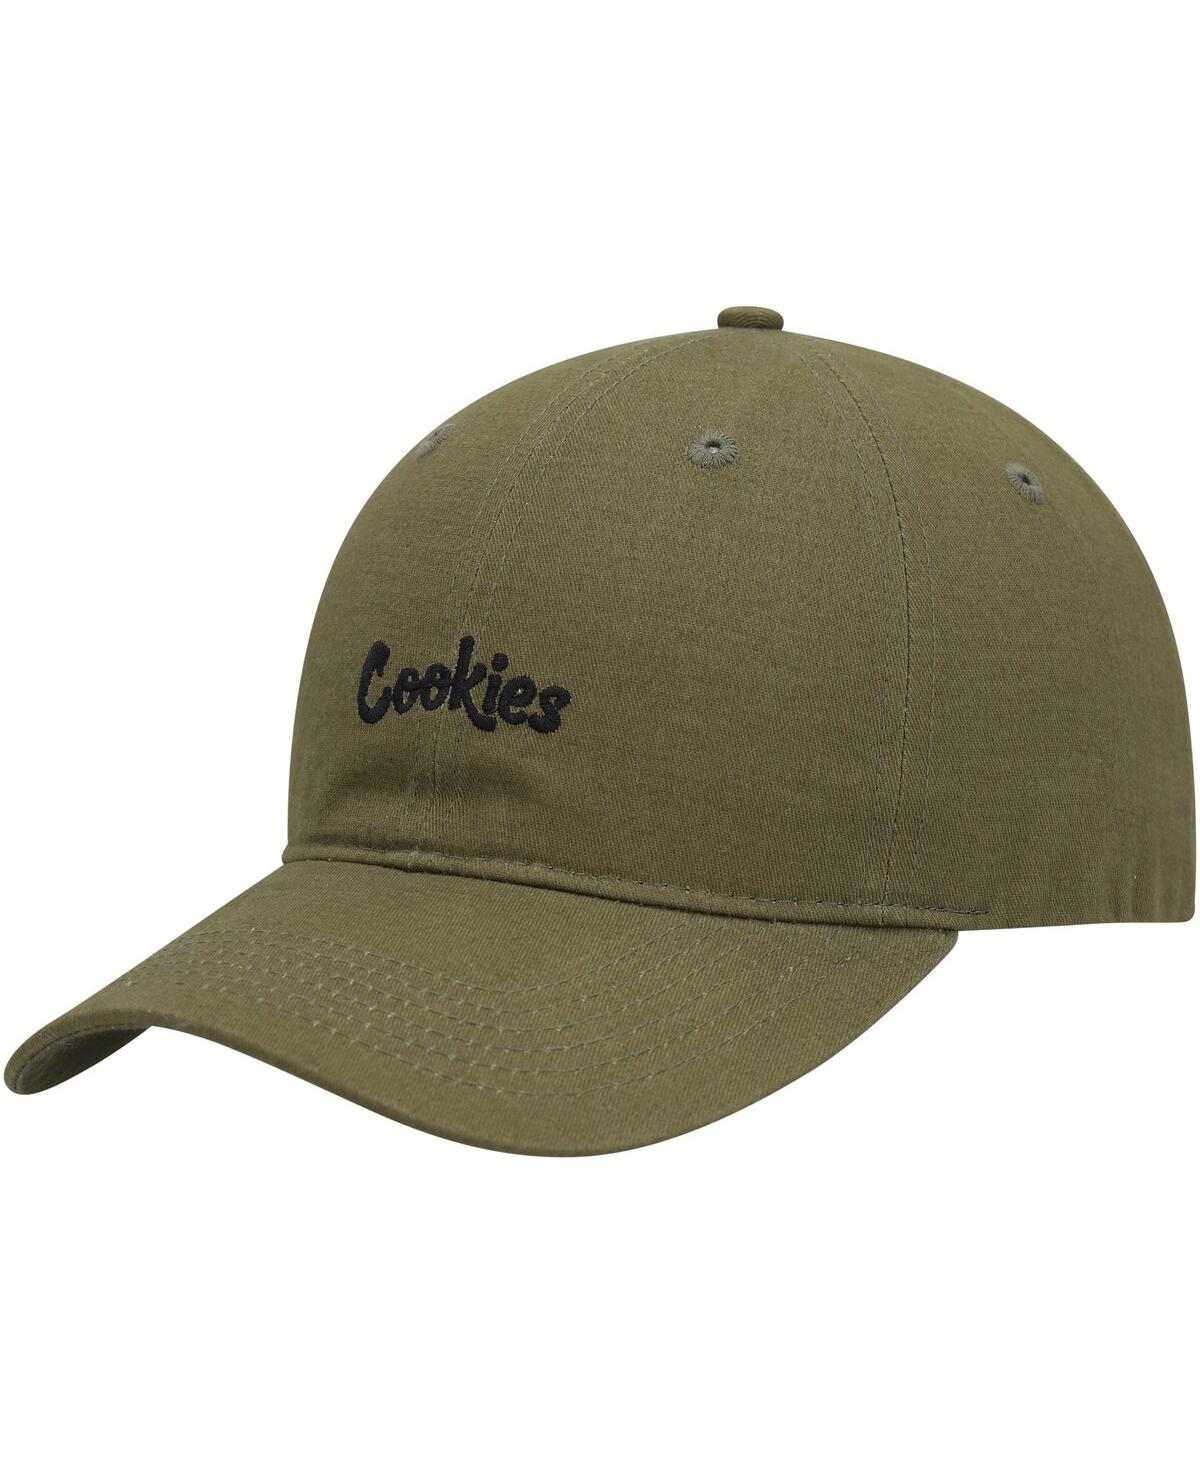 Cookies Men's  Olive Original Dad Adjustable Hat